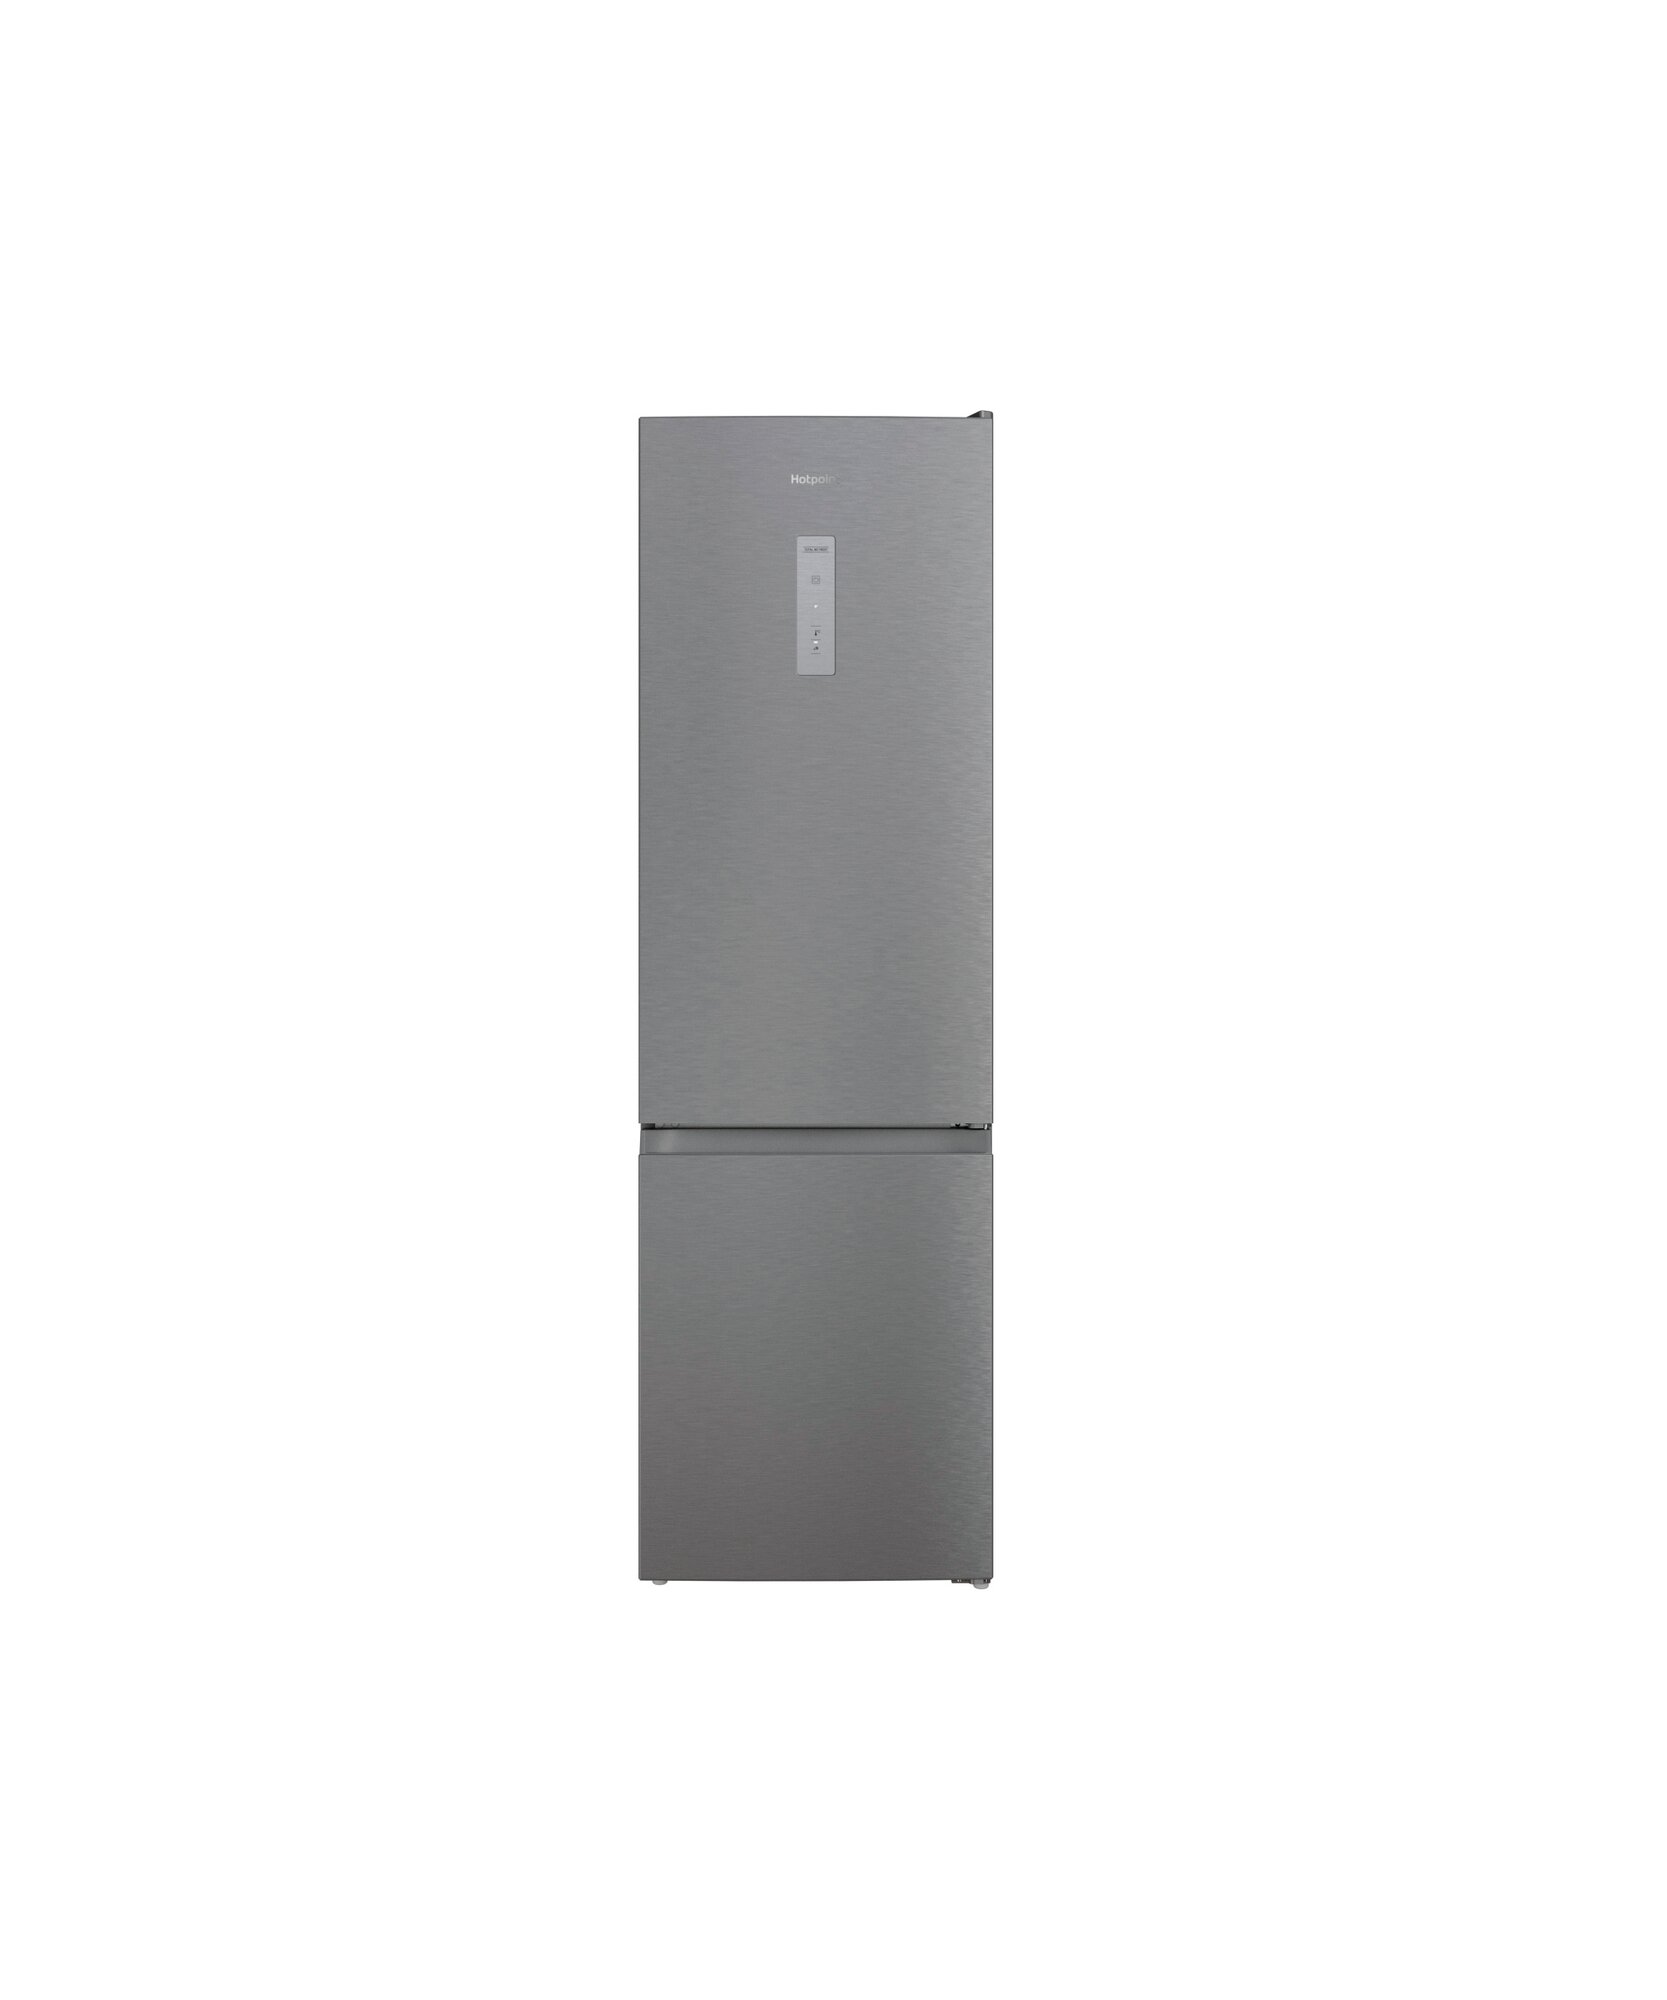 Двухкамерный холодильник Hotpoint HT 5200 MX, No Frost, нержавеющая сталь